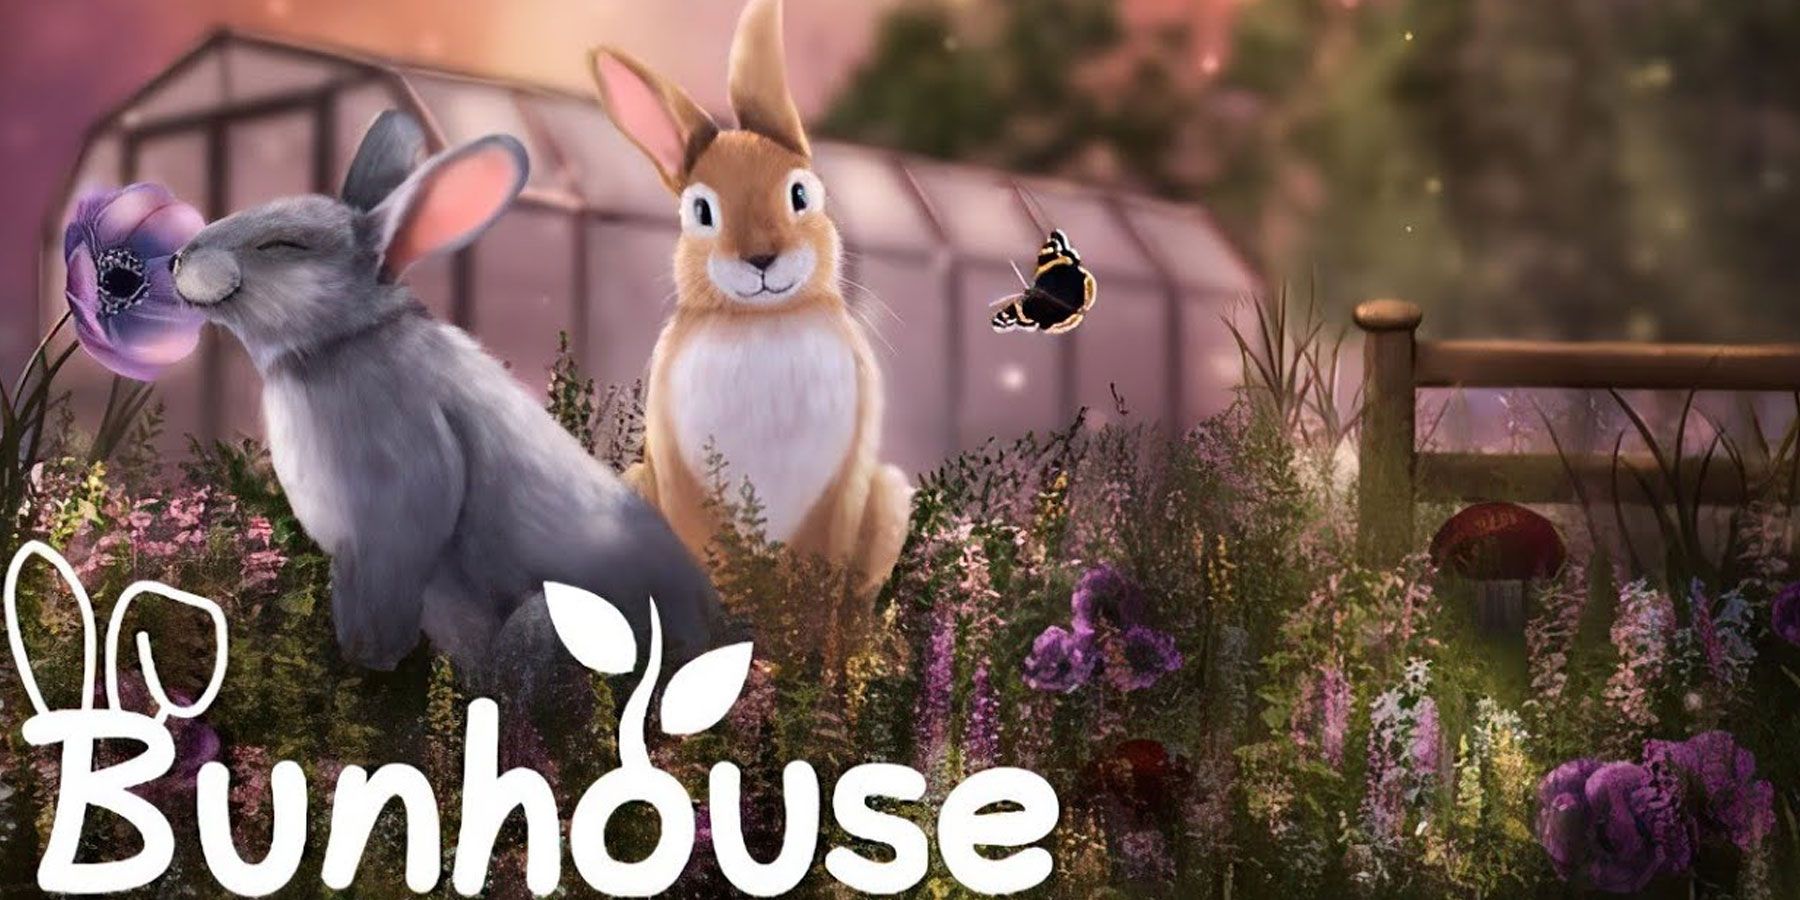 Bunhouse-кролики-пахнущие-цветы-за пределами теплицы